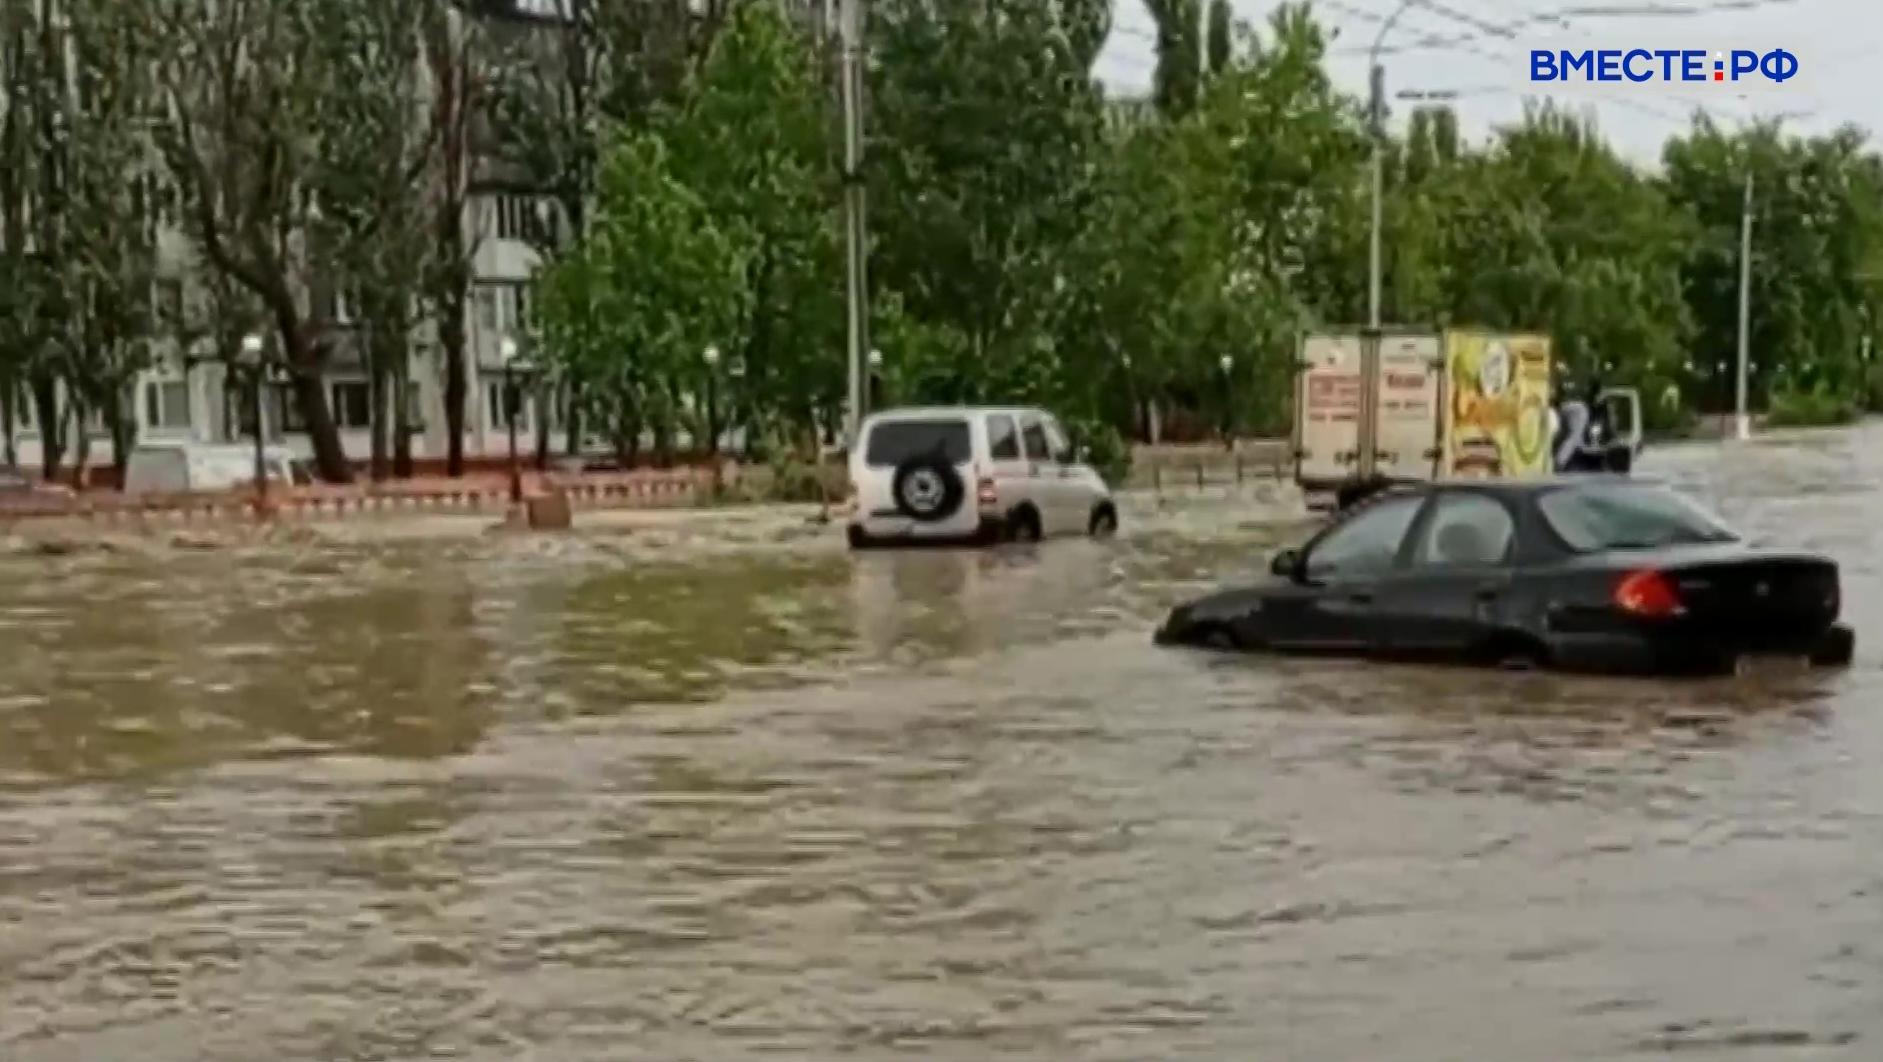 Дожди, которые накануне испытывали на прочность восток Крыма, сместились на юго-запад полуострова